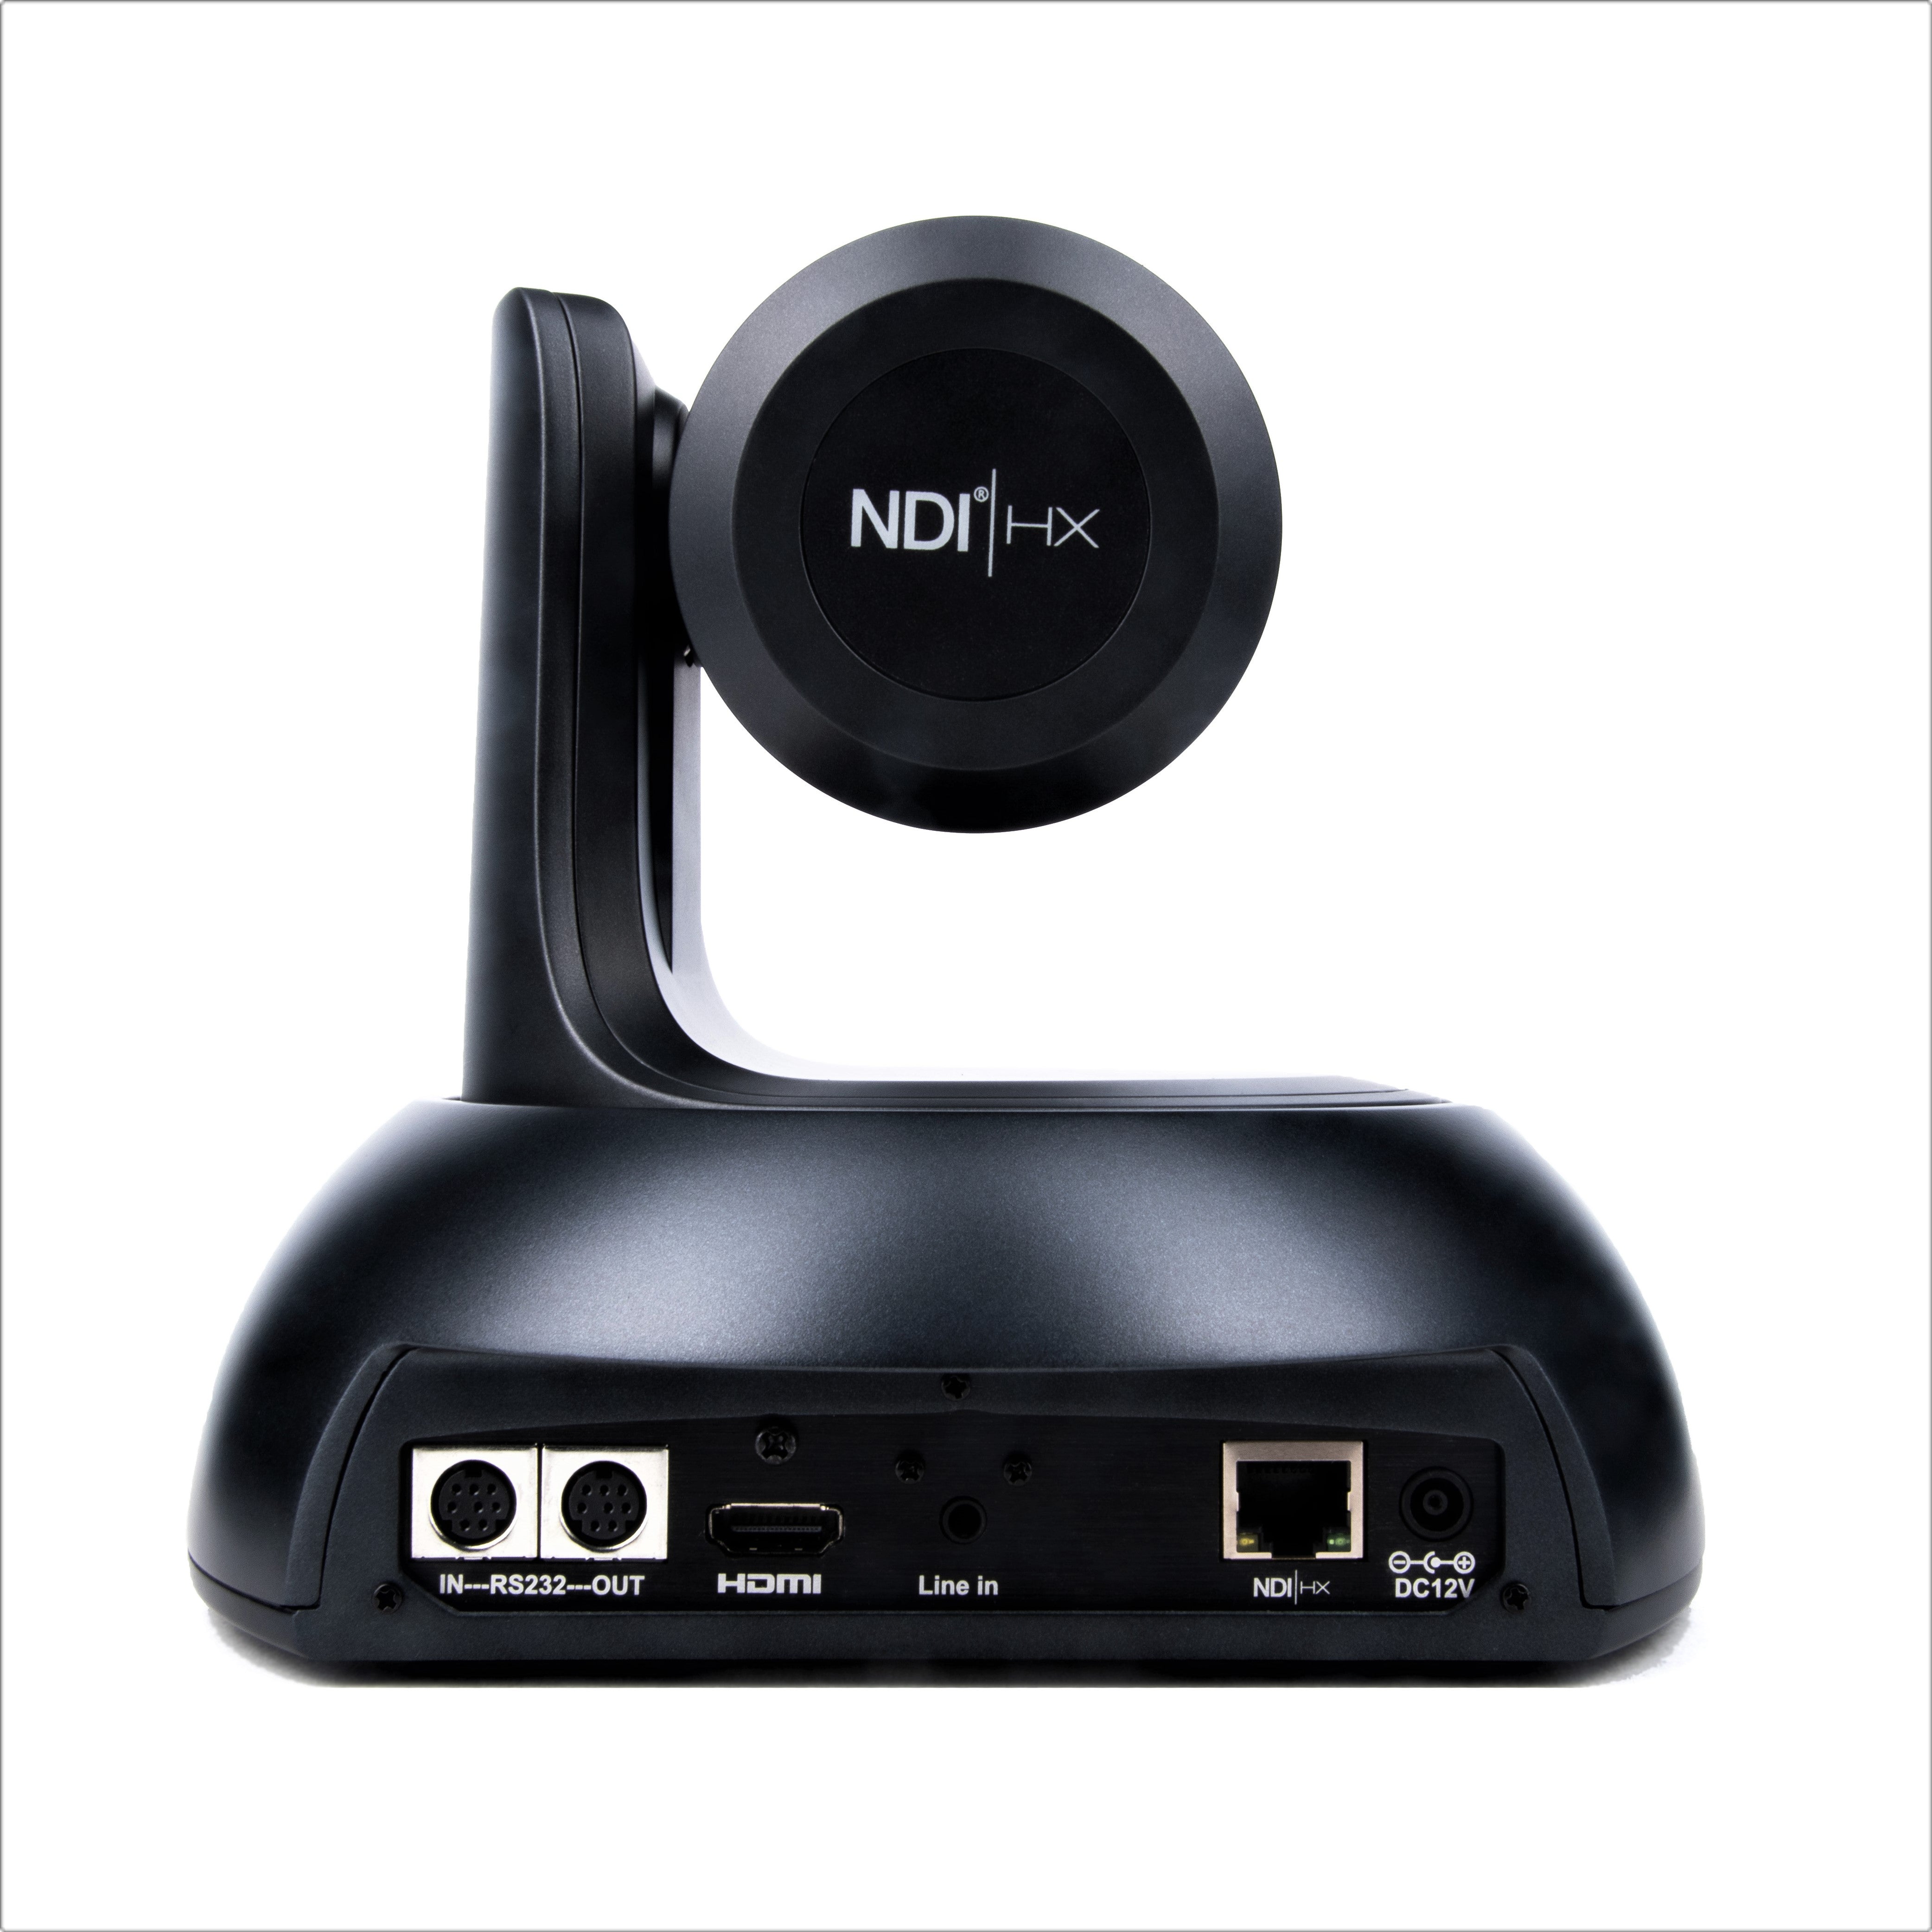 AIDA Imaging Broadcast/Conference NDI®|HX FHD NDI/IP/HDMI 18X Zoom PTZ Camera (Black)